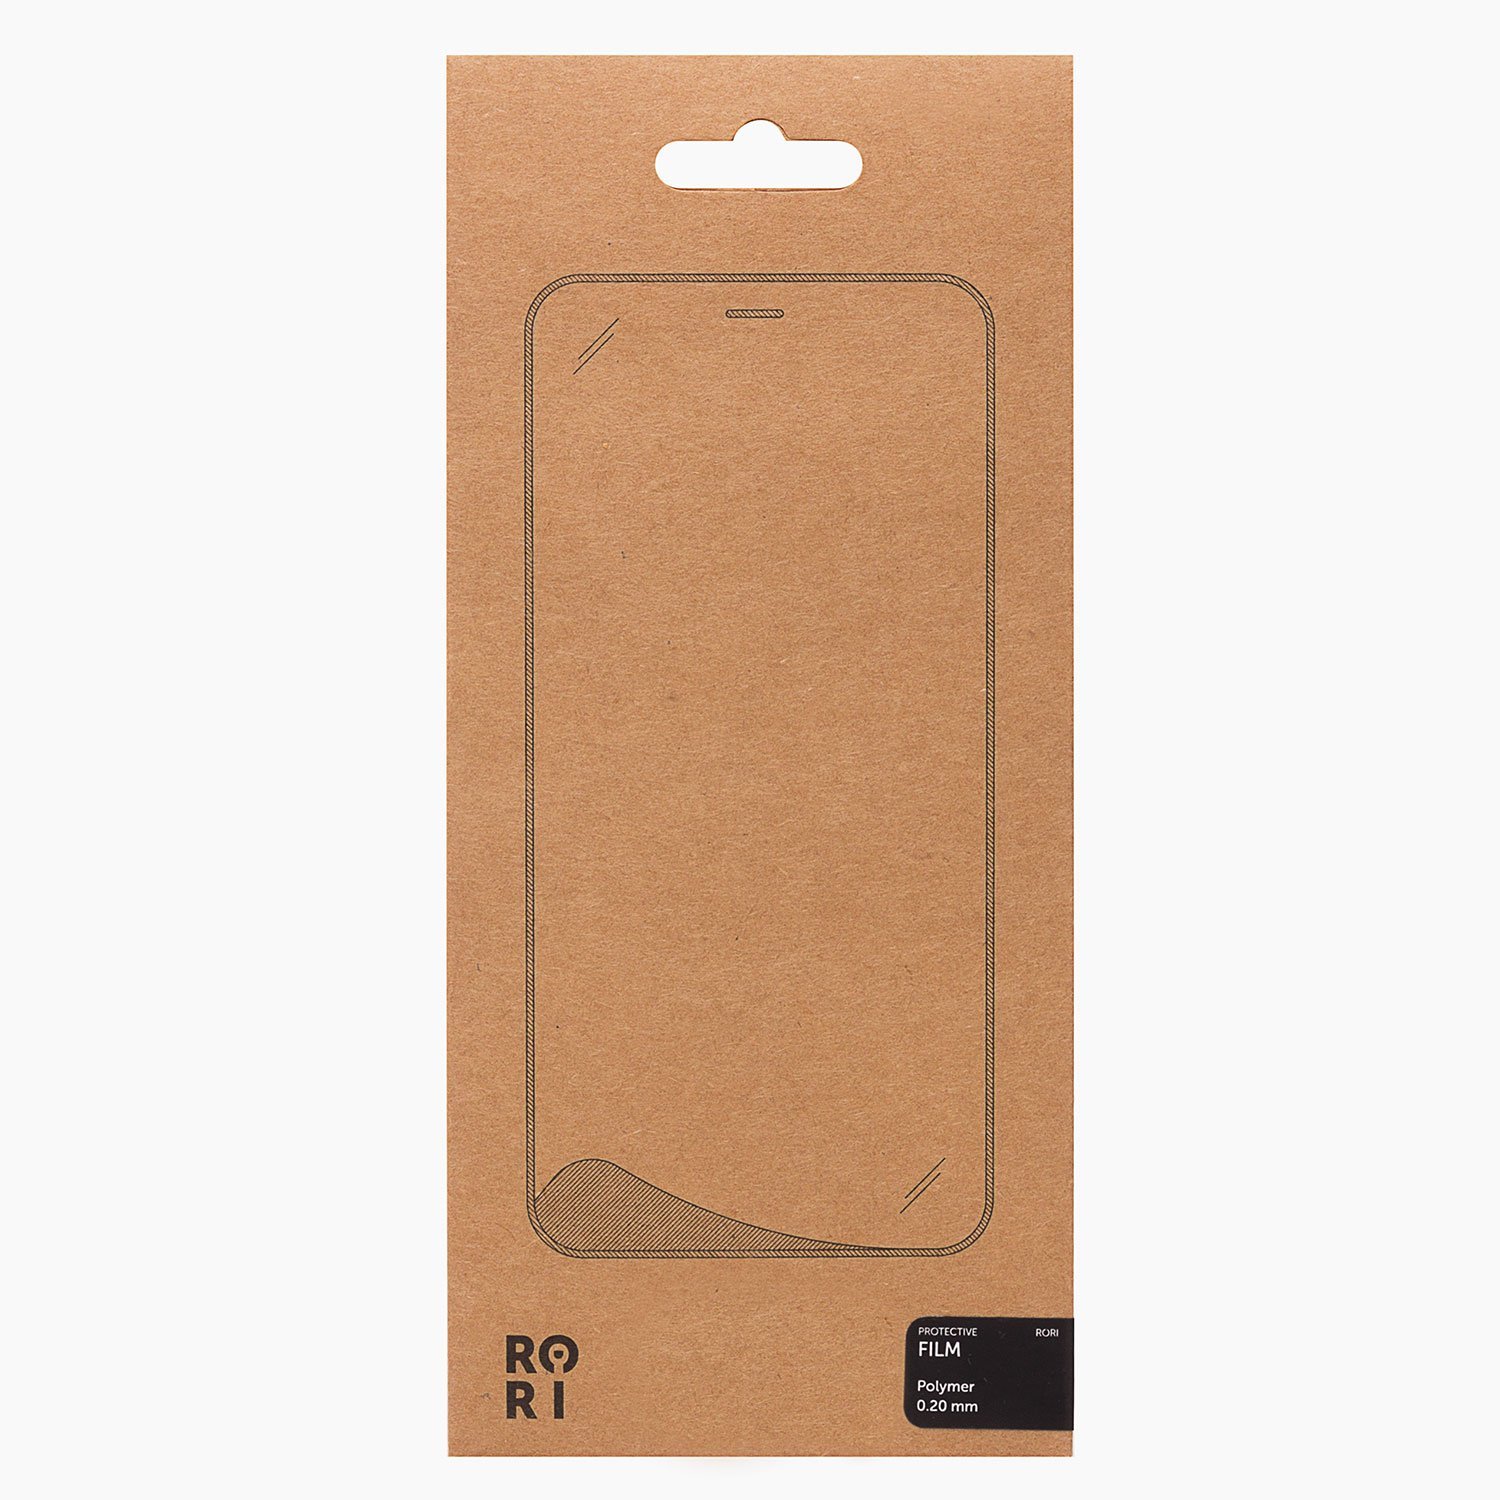 Защитная пленка Rori Polymer для экрана смартфона Apple iPhone 7/8/SE(2020), поверхность матовая, белая рамка (126623)